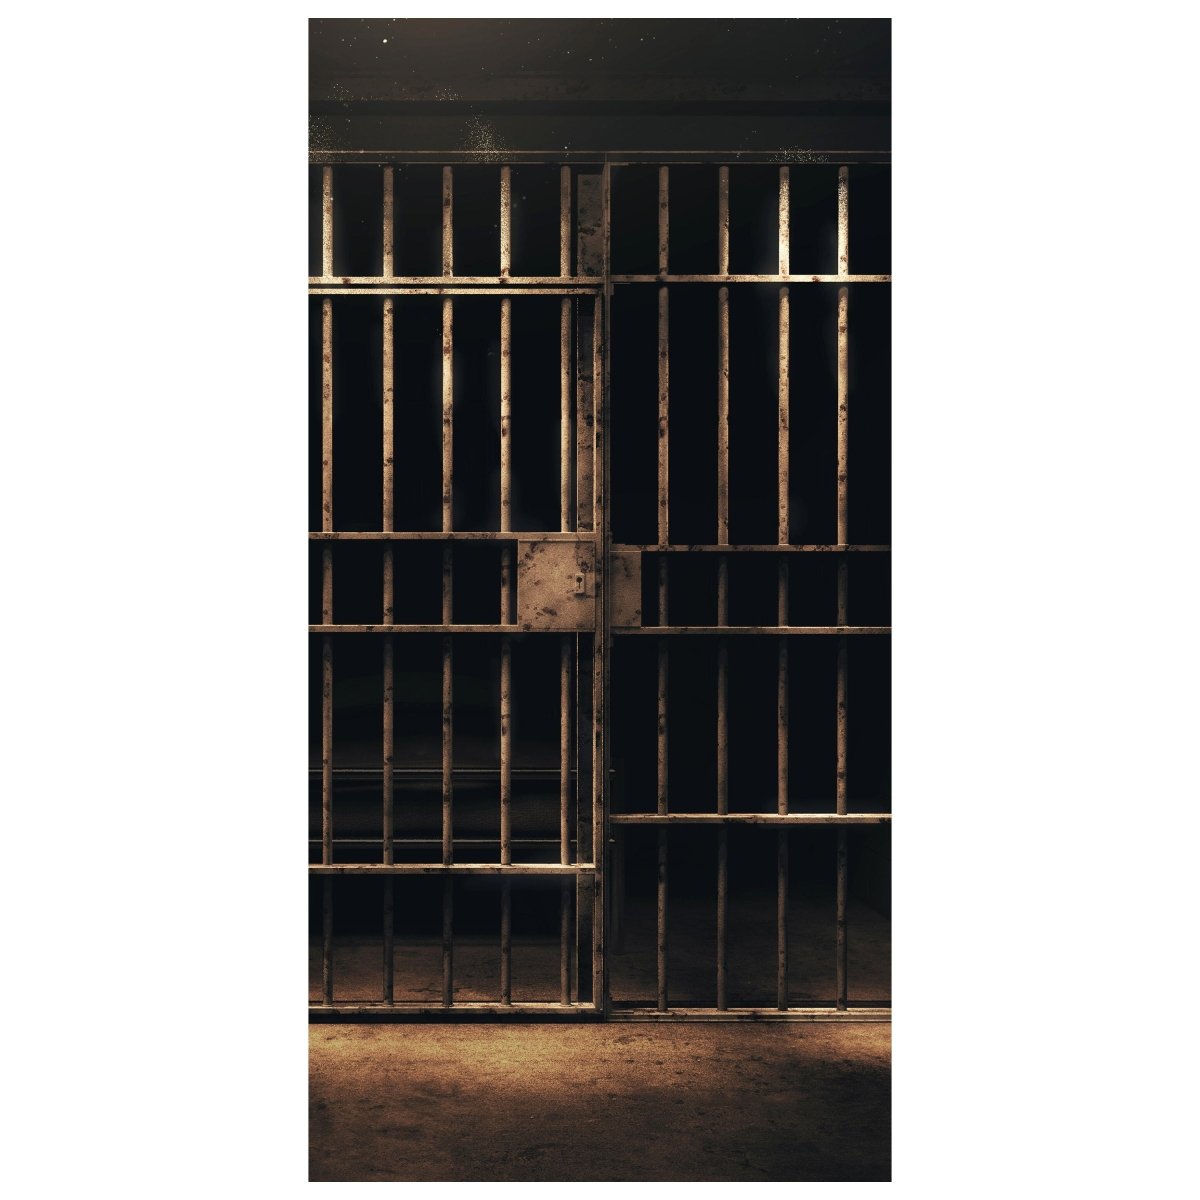 Türtapete Gefängnis Zelle, Gitter, Zellentür M1229 - Bild 2